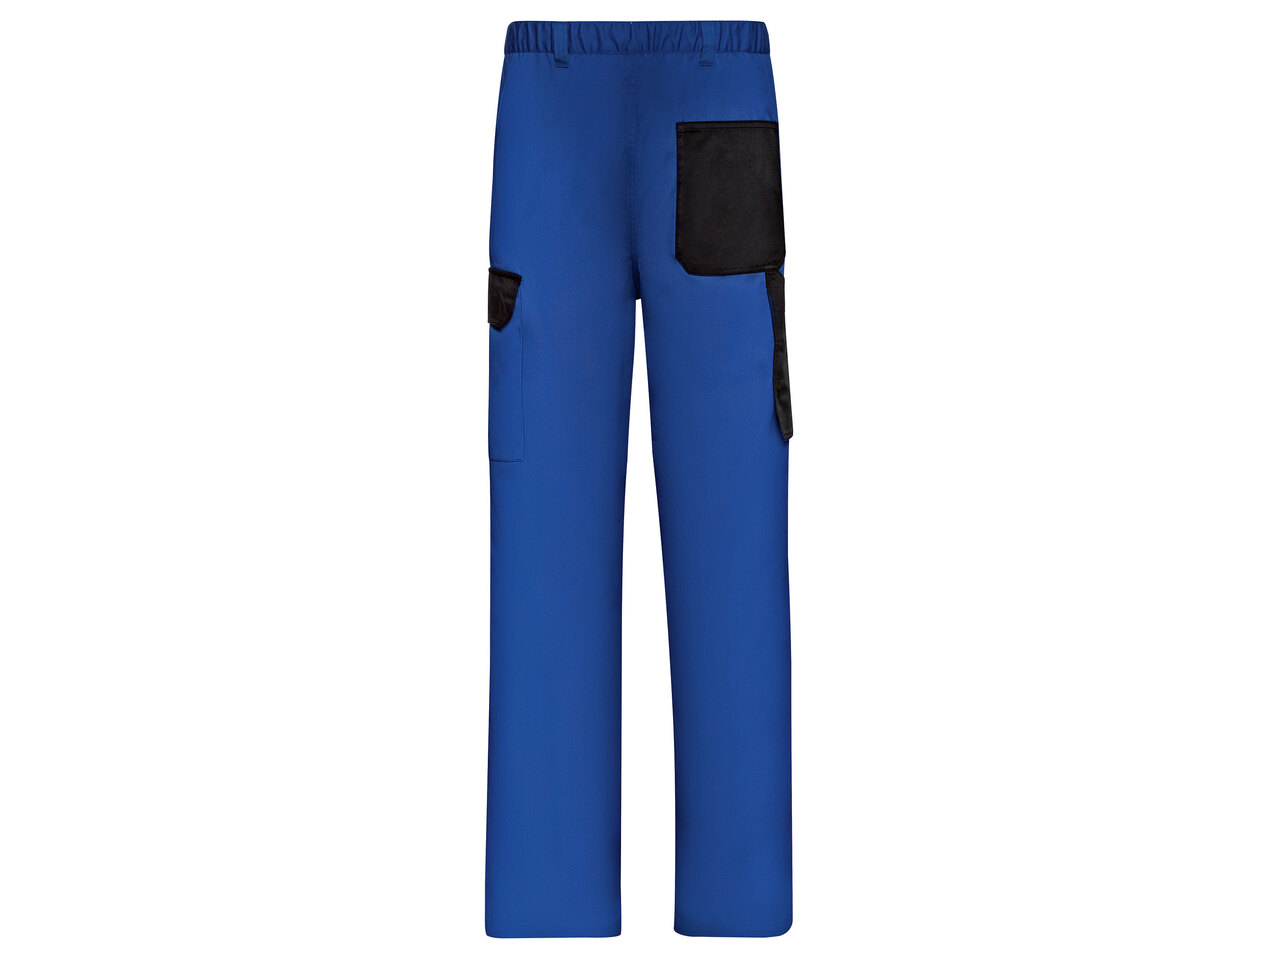 Spodnie robocze męskie , cena 59,9 PLN 
Spodnie robocze męskie 2 kolory 
- rozmiary: ...